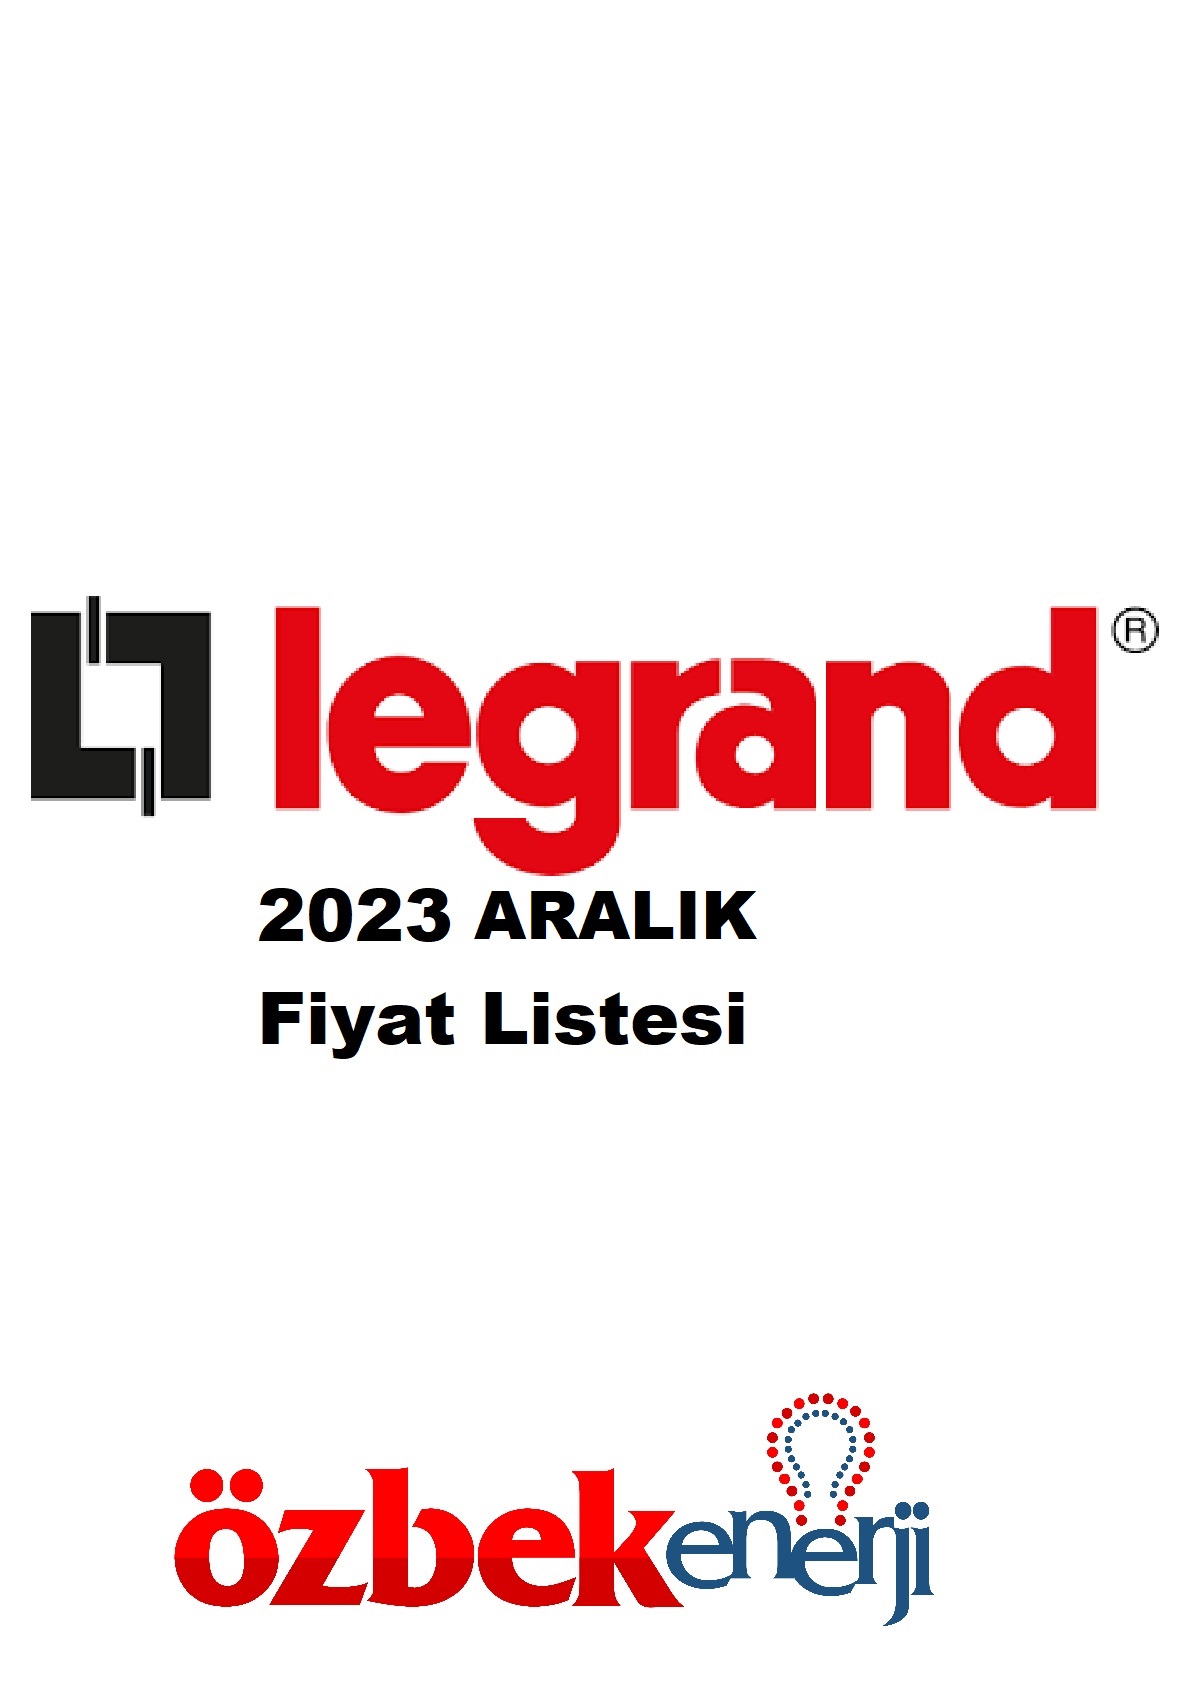 LEGRAND 2023 ARALIK Özbek Enerji | Elektrik Malzemeleri Toptan ve Perakende Satışı